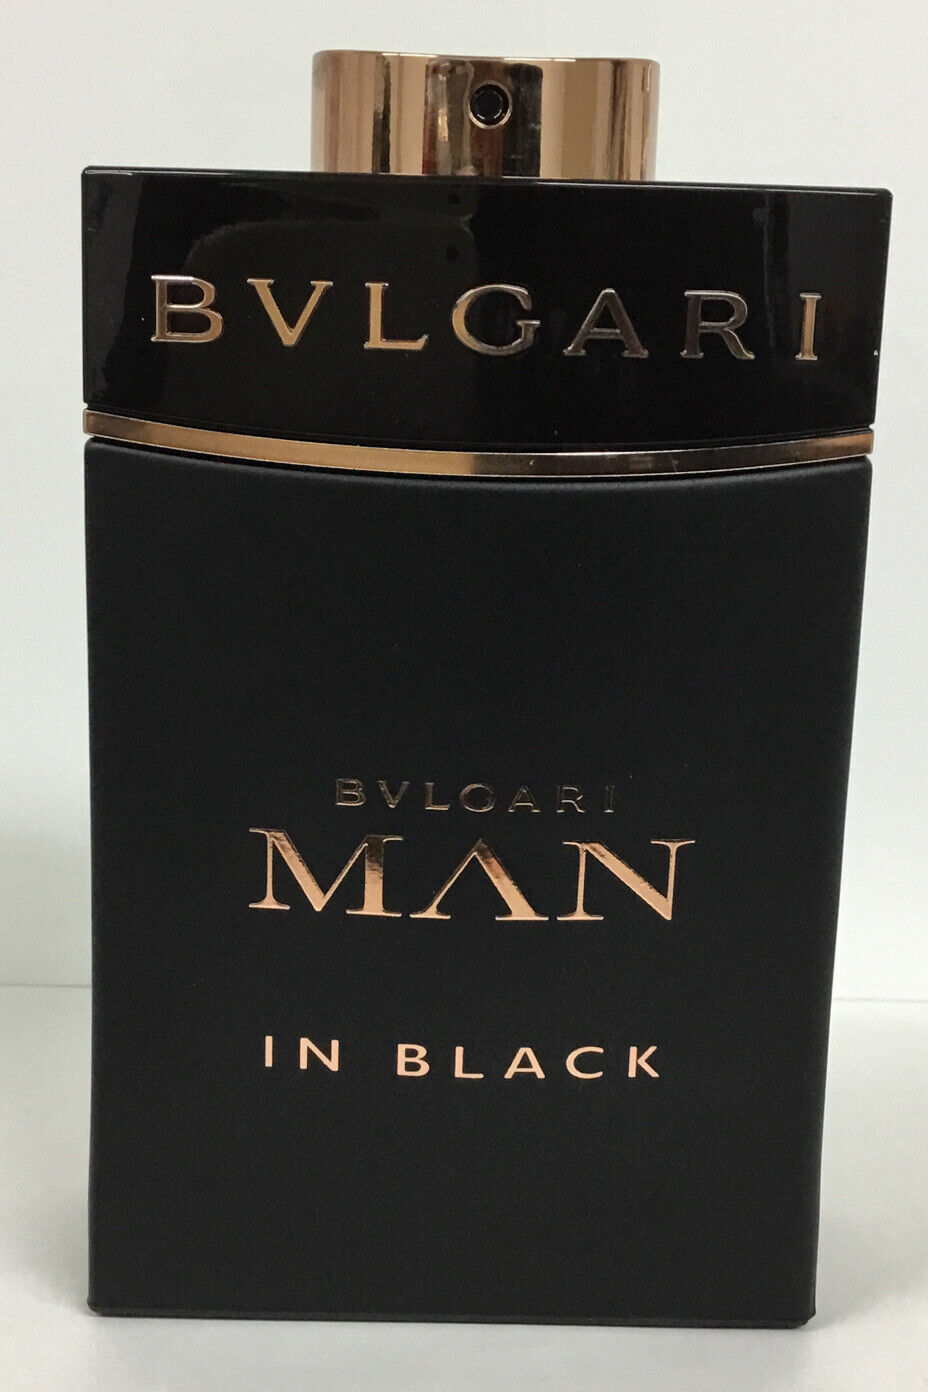 Bvlgari Men In Black Eau De Parfum Spray 5oz As Pictured/100% FULL